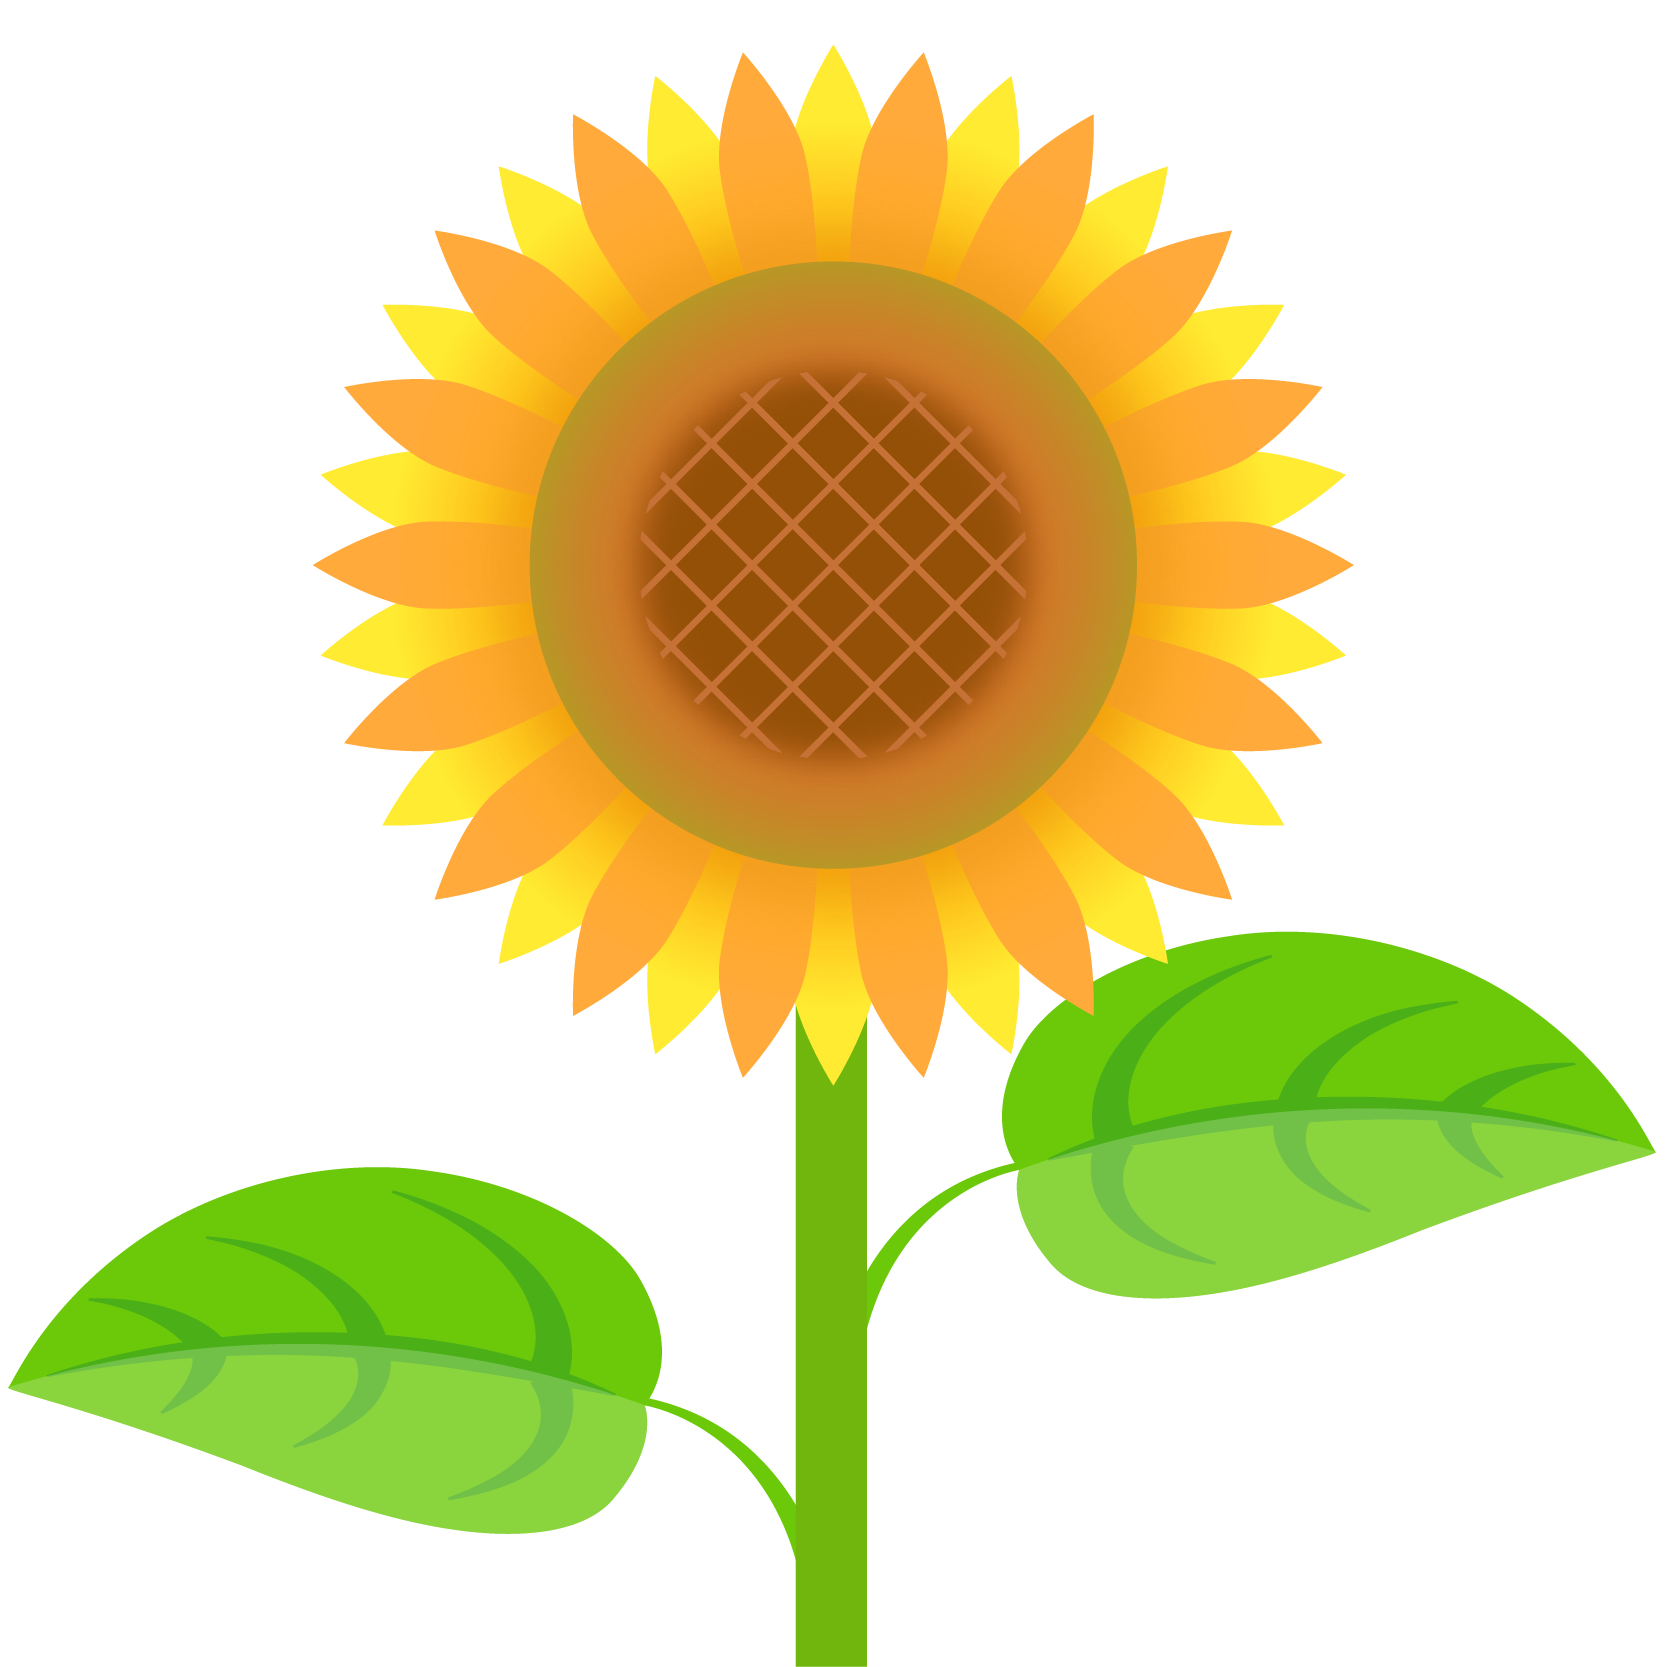 商用フリー 無料イラスト ひまわり 向日葵 のイラスト Sunflowerillustration002 商用ok フリー素材集 ナイスなイラスト